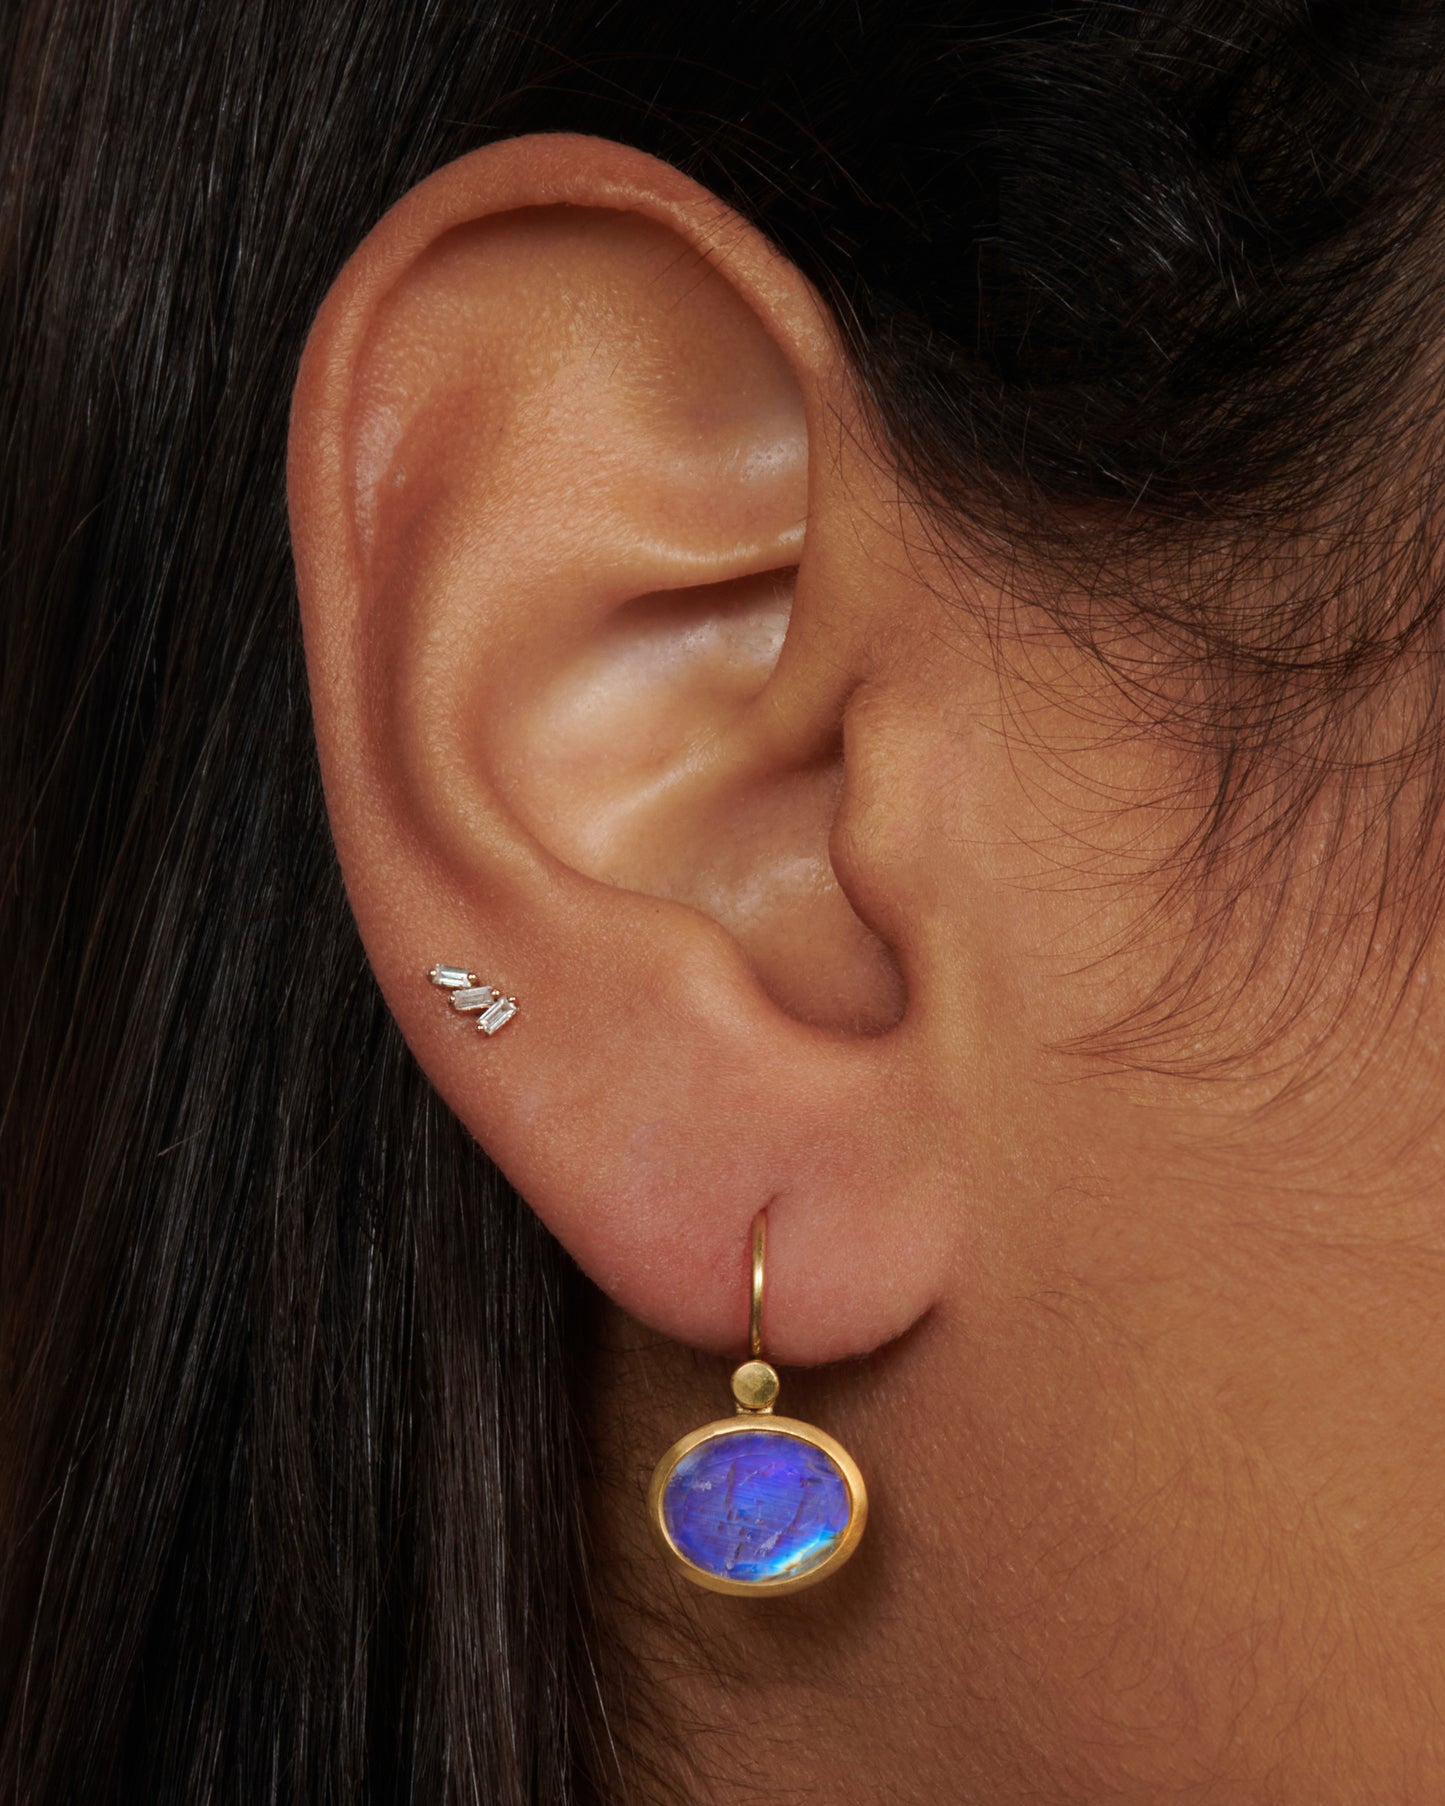 An oval moonstone earring set in a yellow gold bezel on an ear.